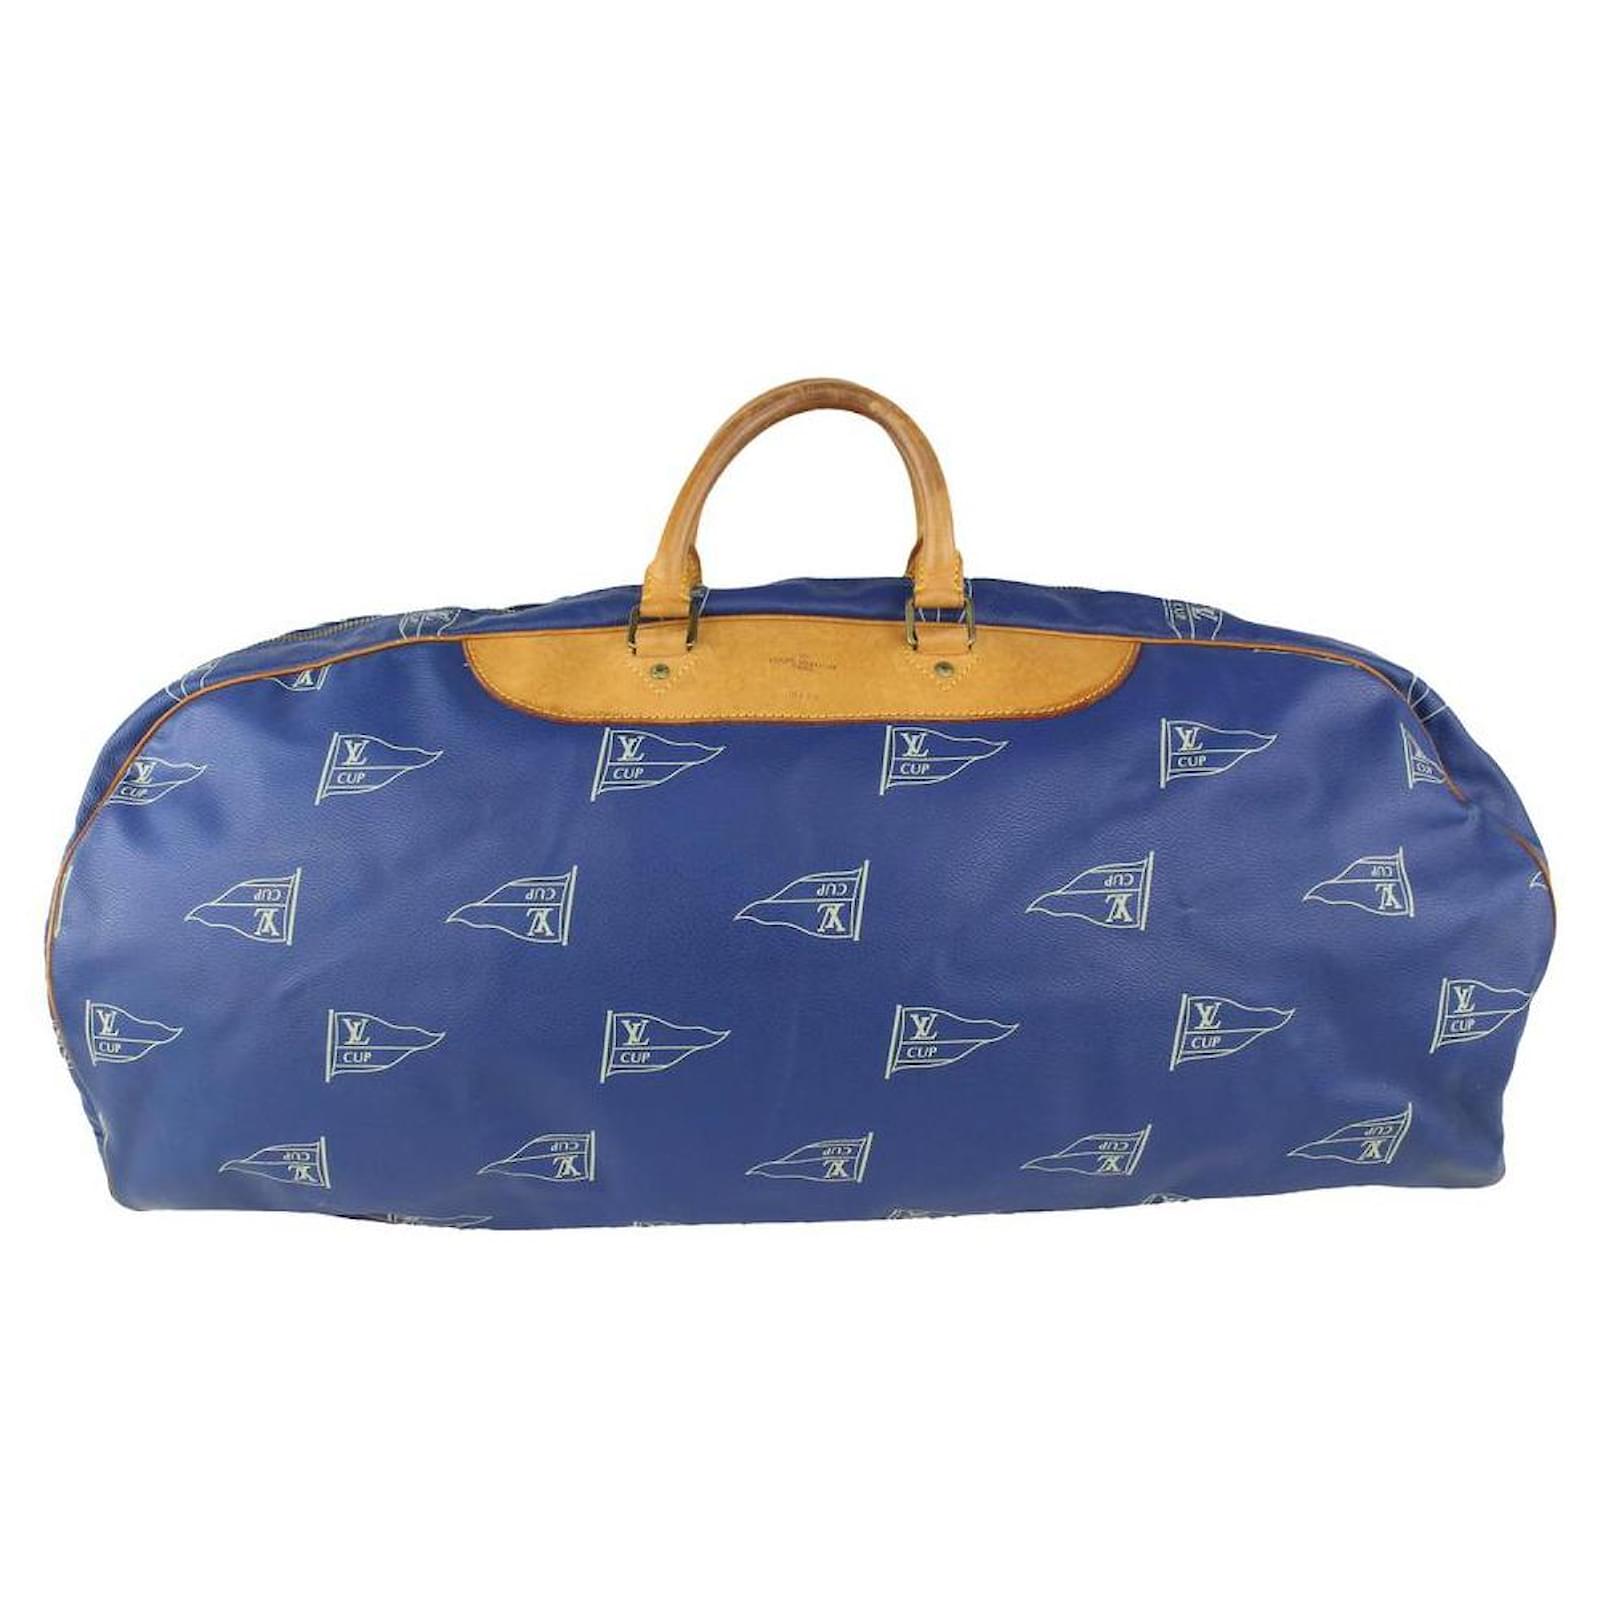 lv blue bag